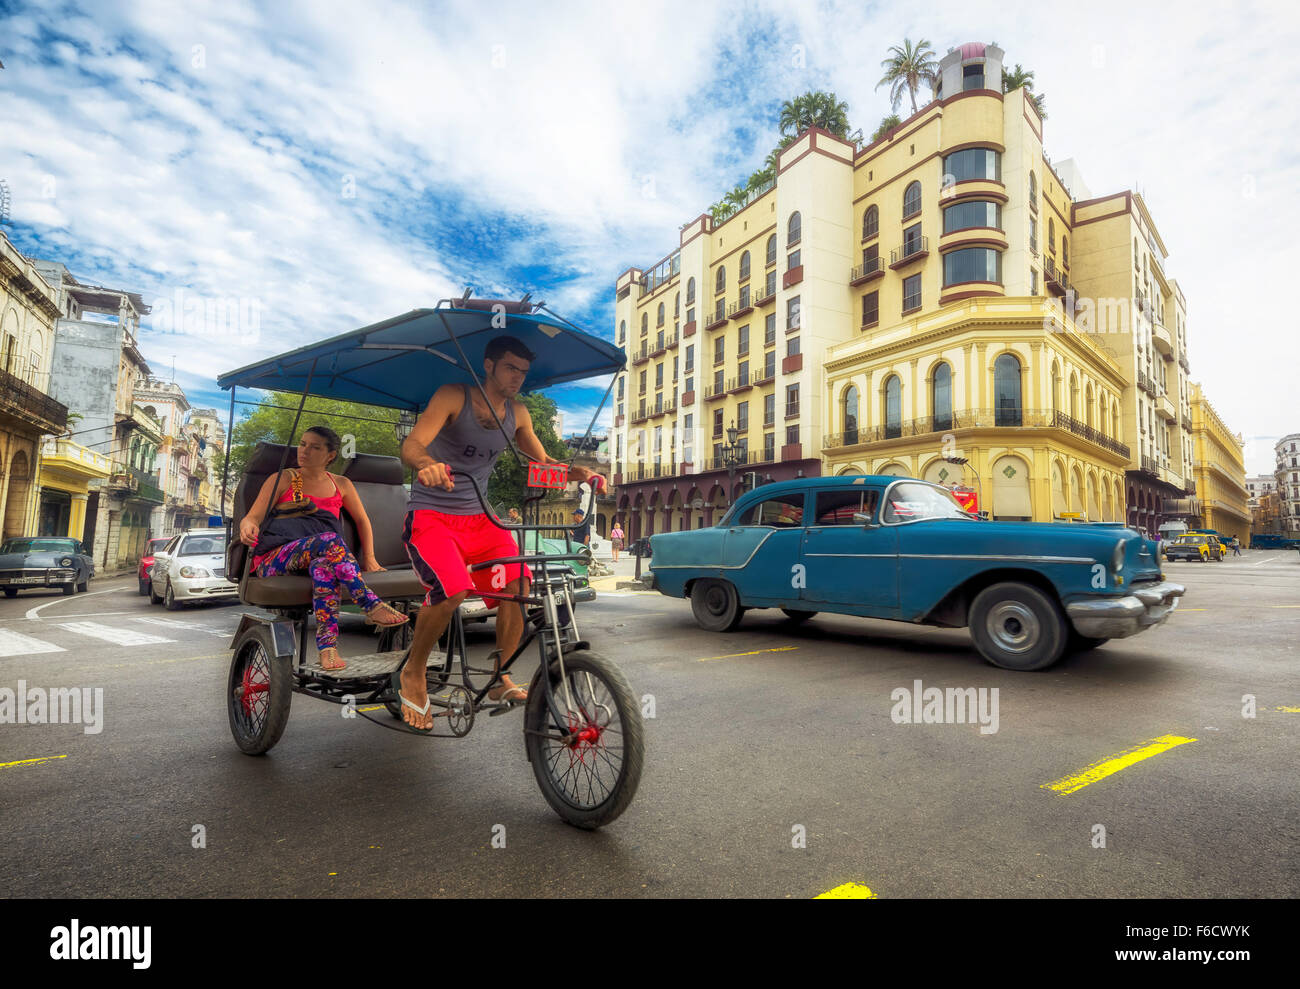 Oldtimer en el paisaje urbano, el triciclo, la gente taxi en la intersección de la calle cerca del Hotel Telégrafo, La Habana, Ciudad de La Habana Foto de stock